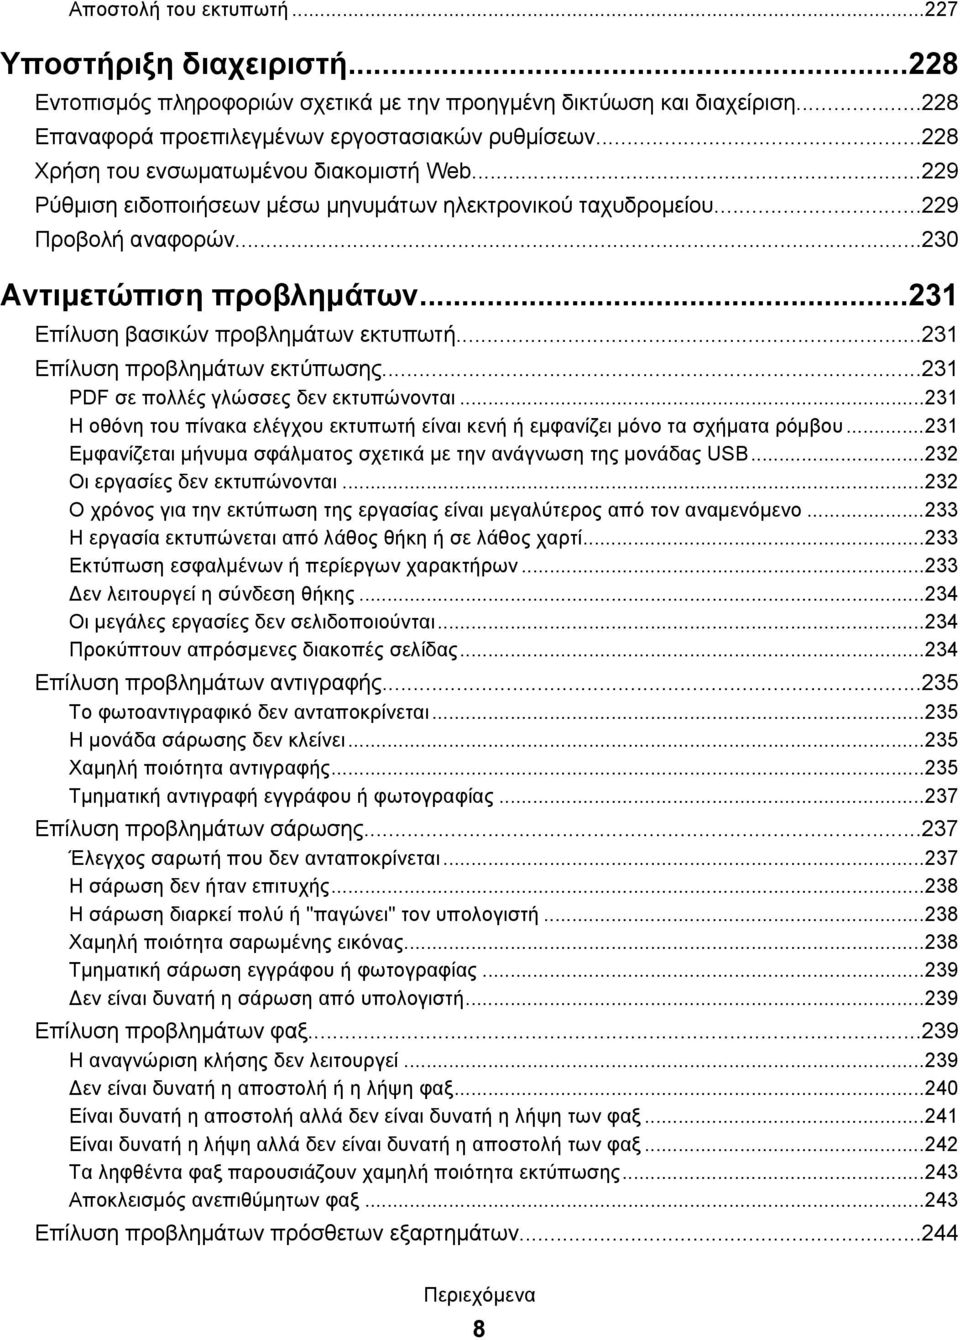 ..231 Επίλυση βασικών προβλημάτων εκτυπωτή...231 Επίλυση προβλημάτων εκτύπωσης...231 PDF σε πολλές γλώσσες δεν εκτυπώνονται.